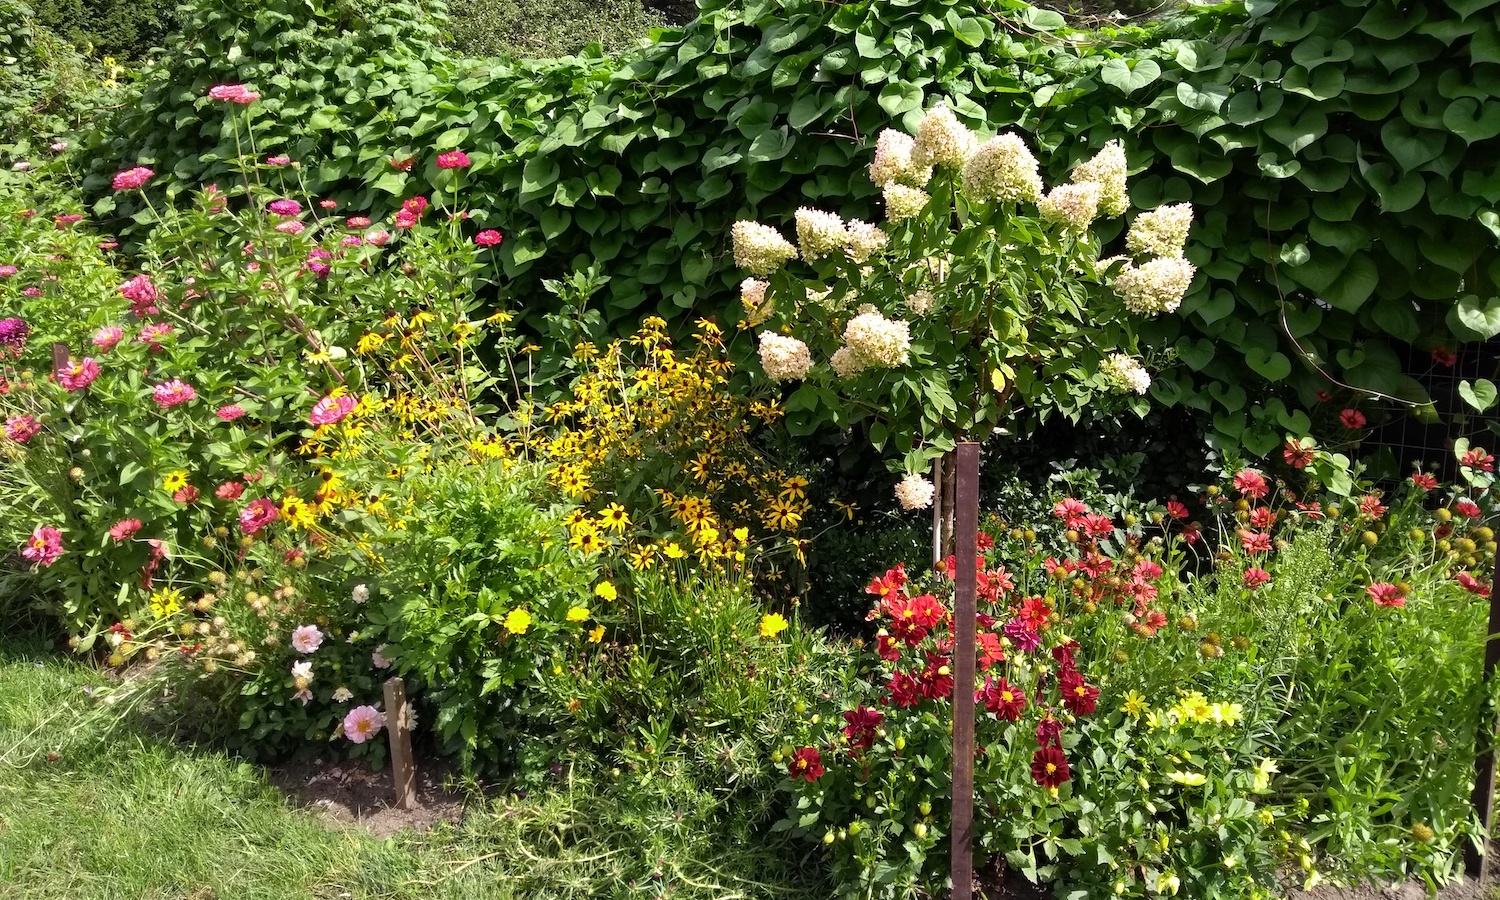 Garden in Bloom